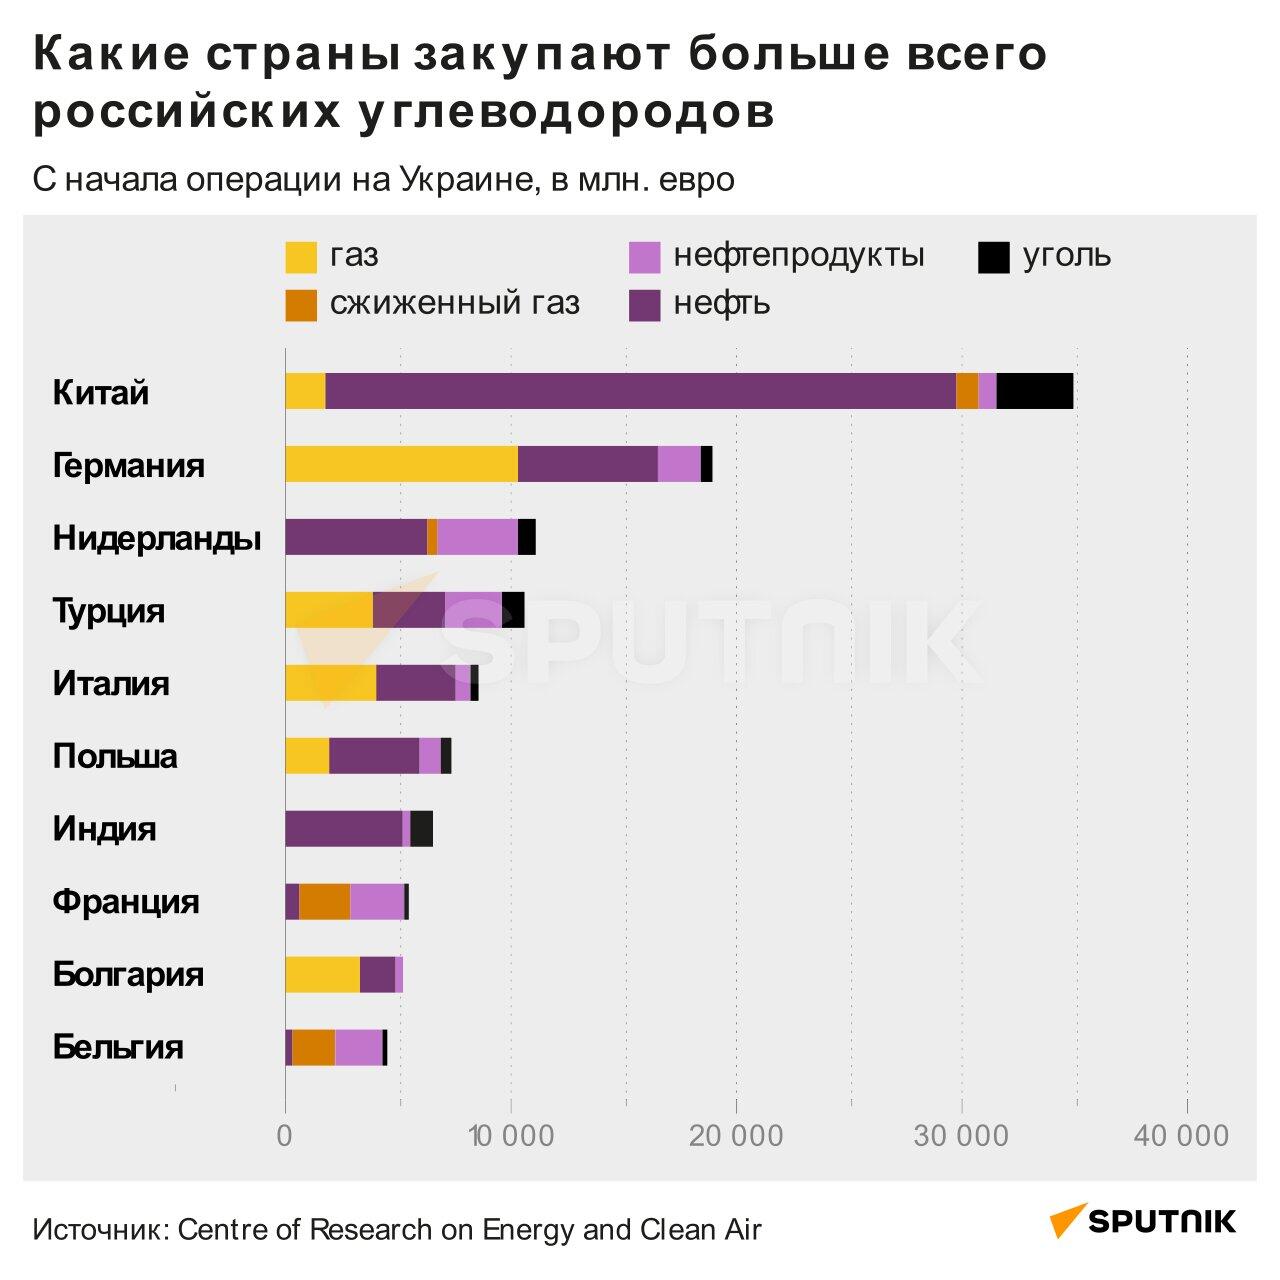 Инфографика: Какие страны закупают больше всего российские углеводороды - Sputnik Азербайджан